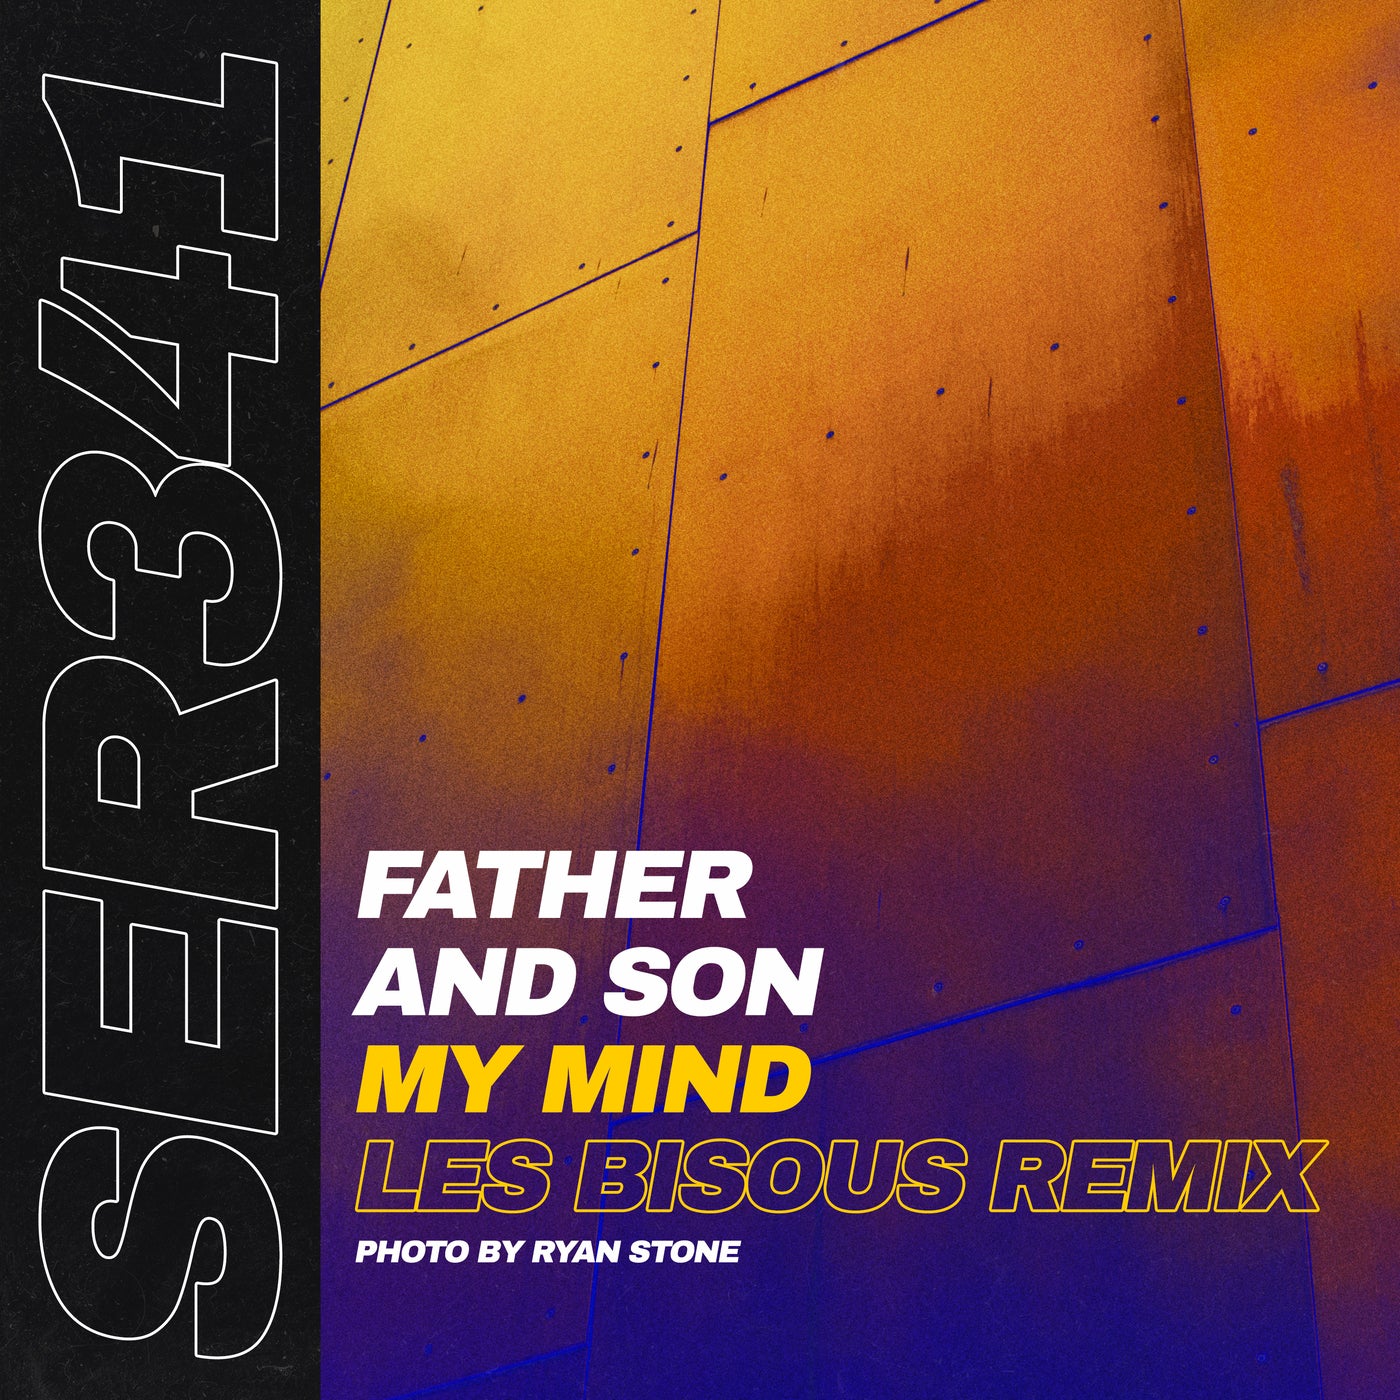 My Mind - Les Bisous Remix